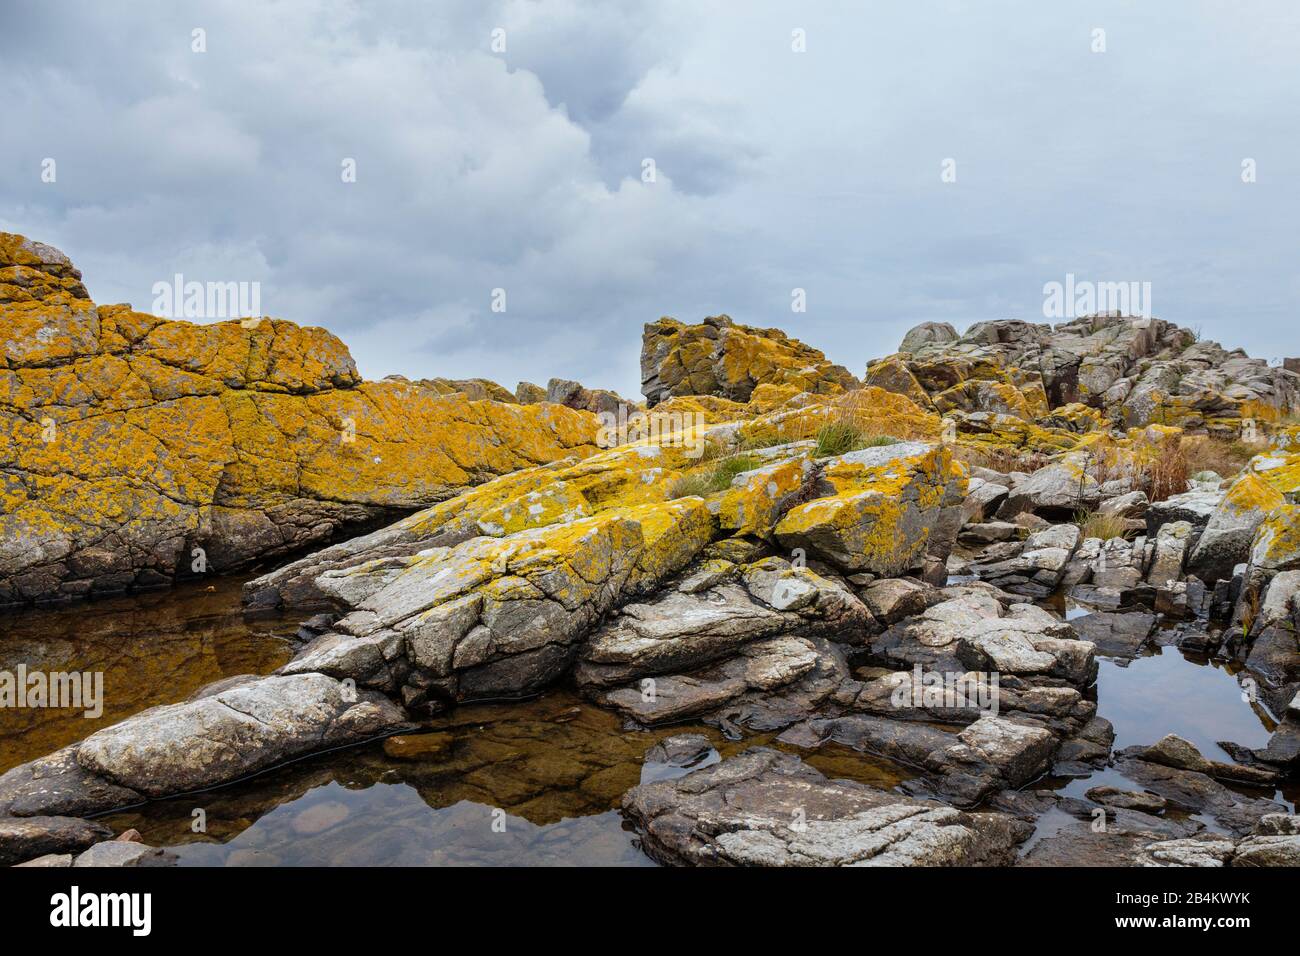 Europa, Dänemark, Bornholm, Bolshavn. Die felsige, mit leuchtend gelben Flechten bewachsene Ostküste. Foto Stock